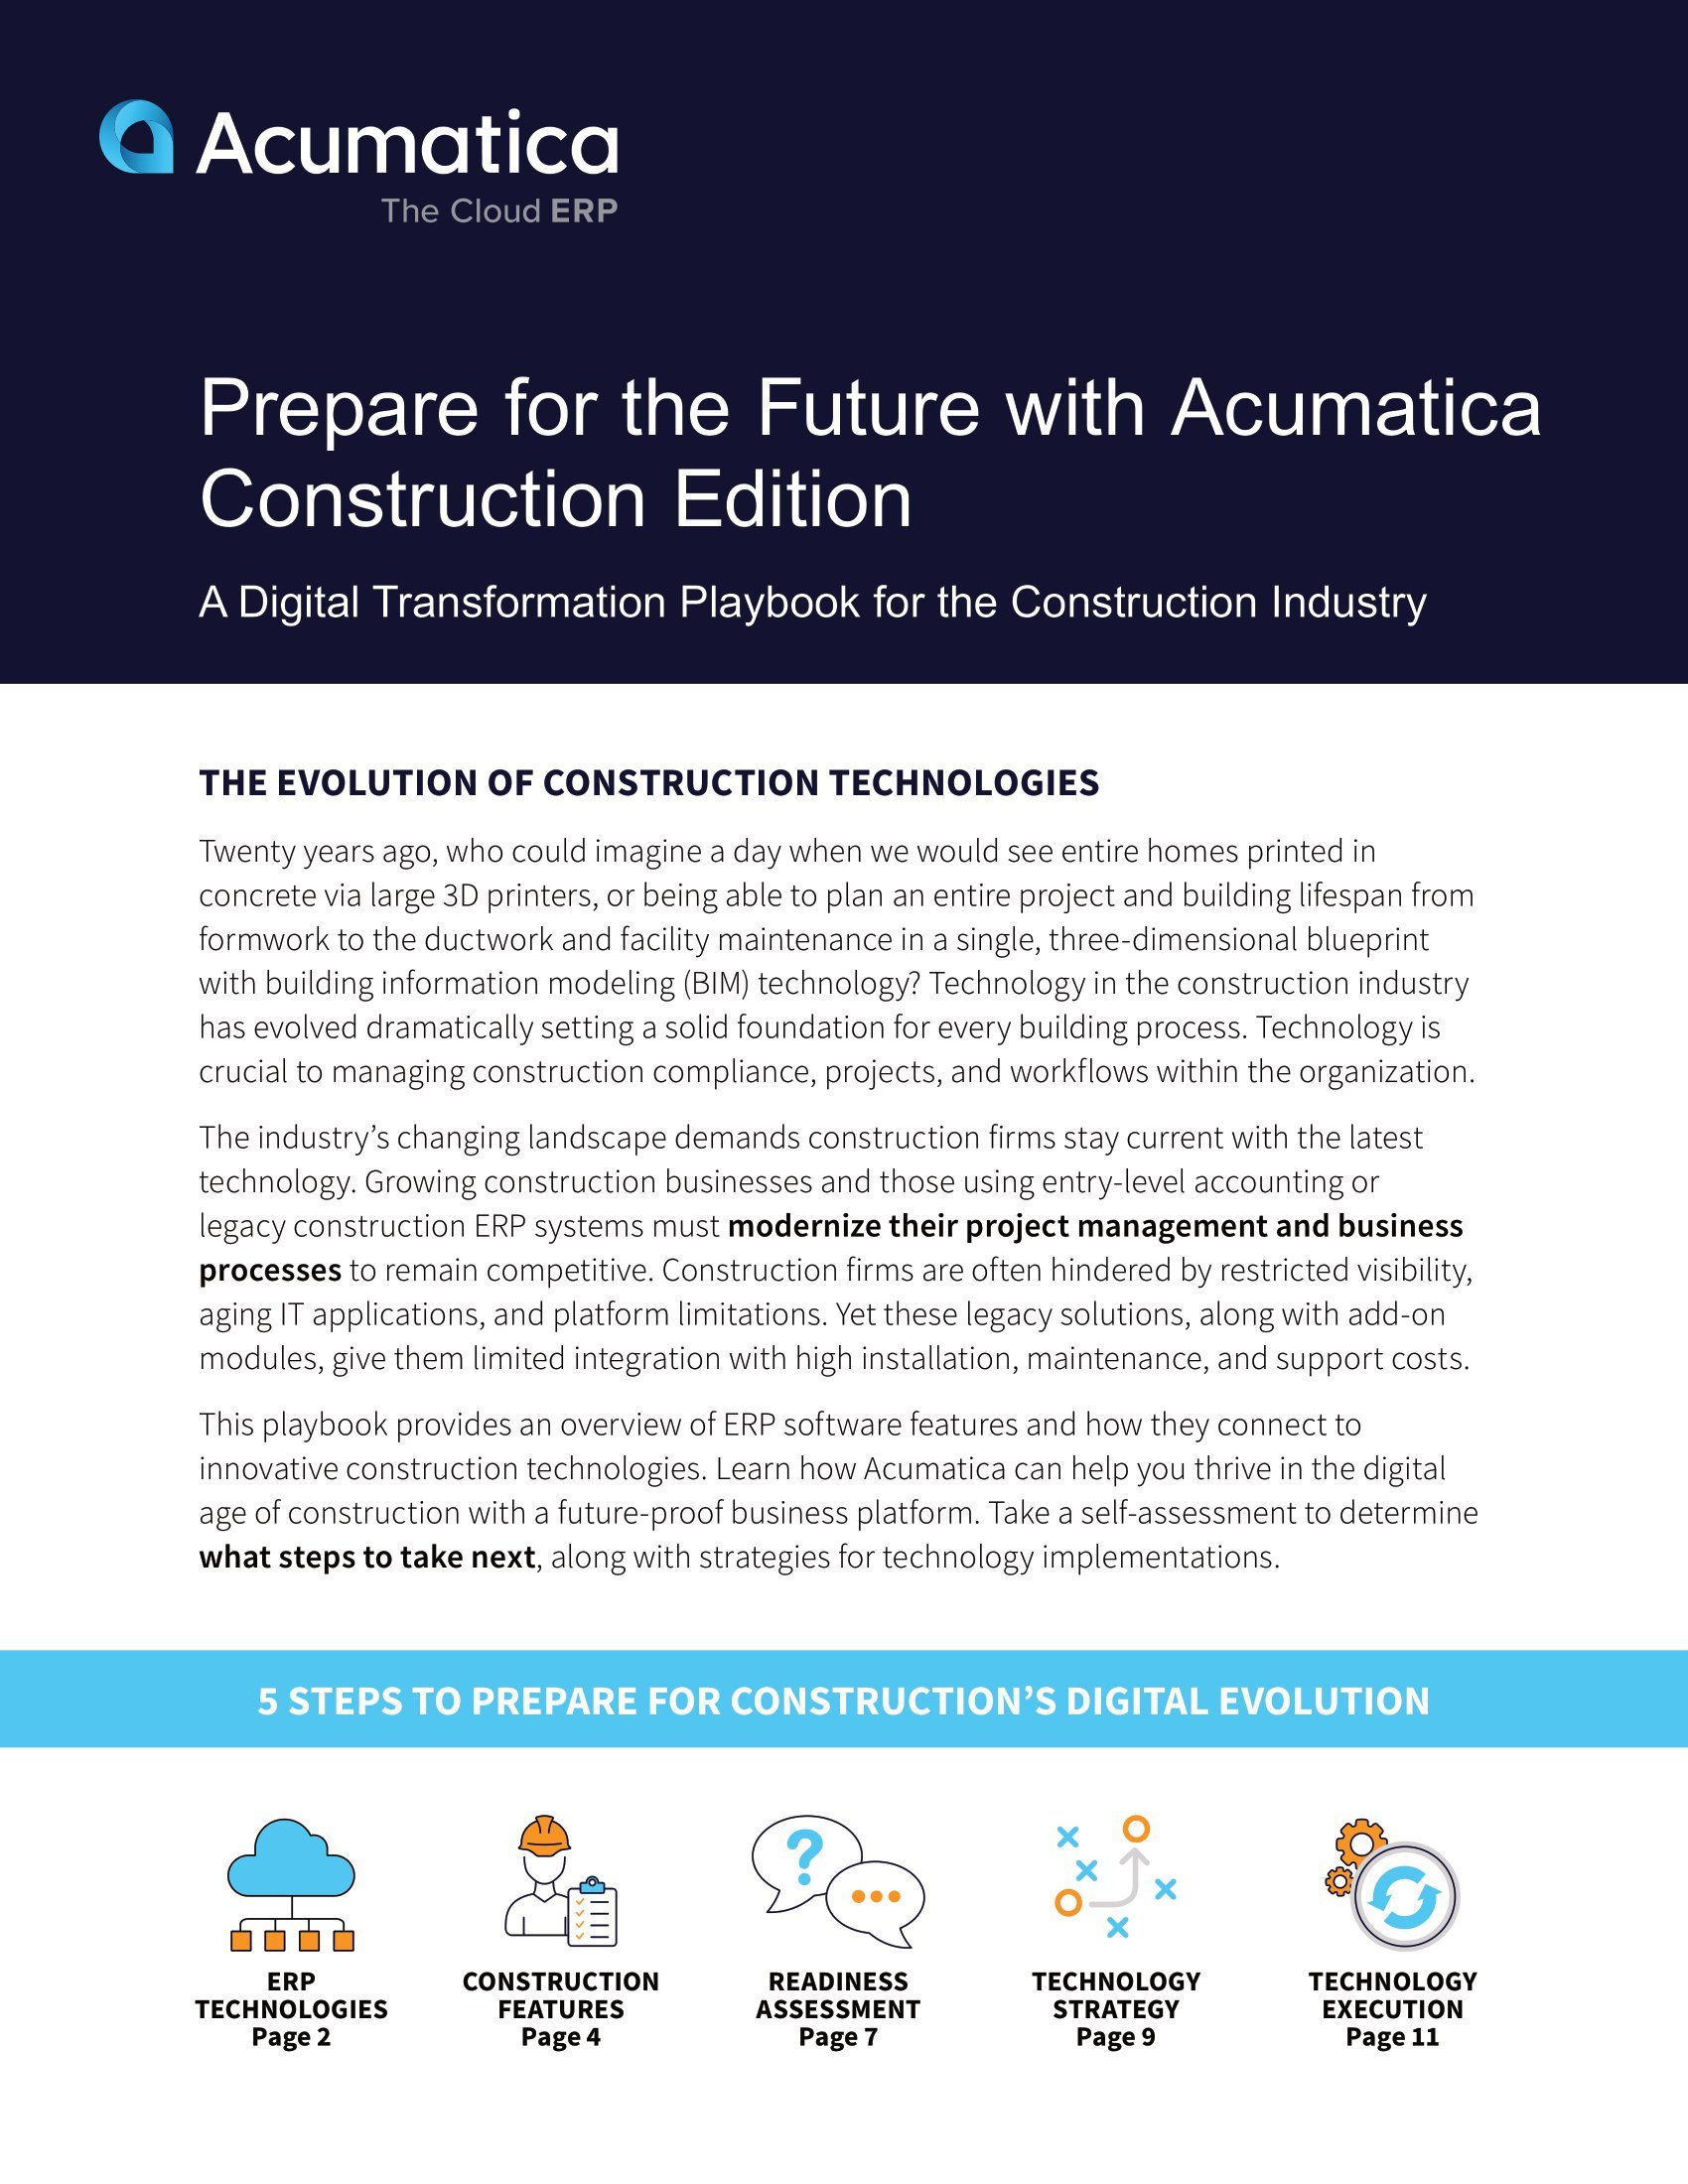 Prepárese para la evolución del sector de la construcción con una transformación digital